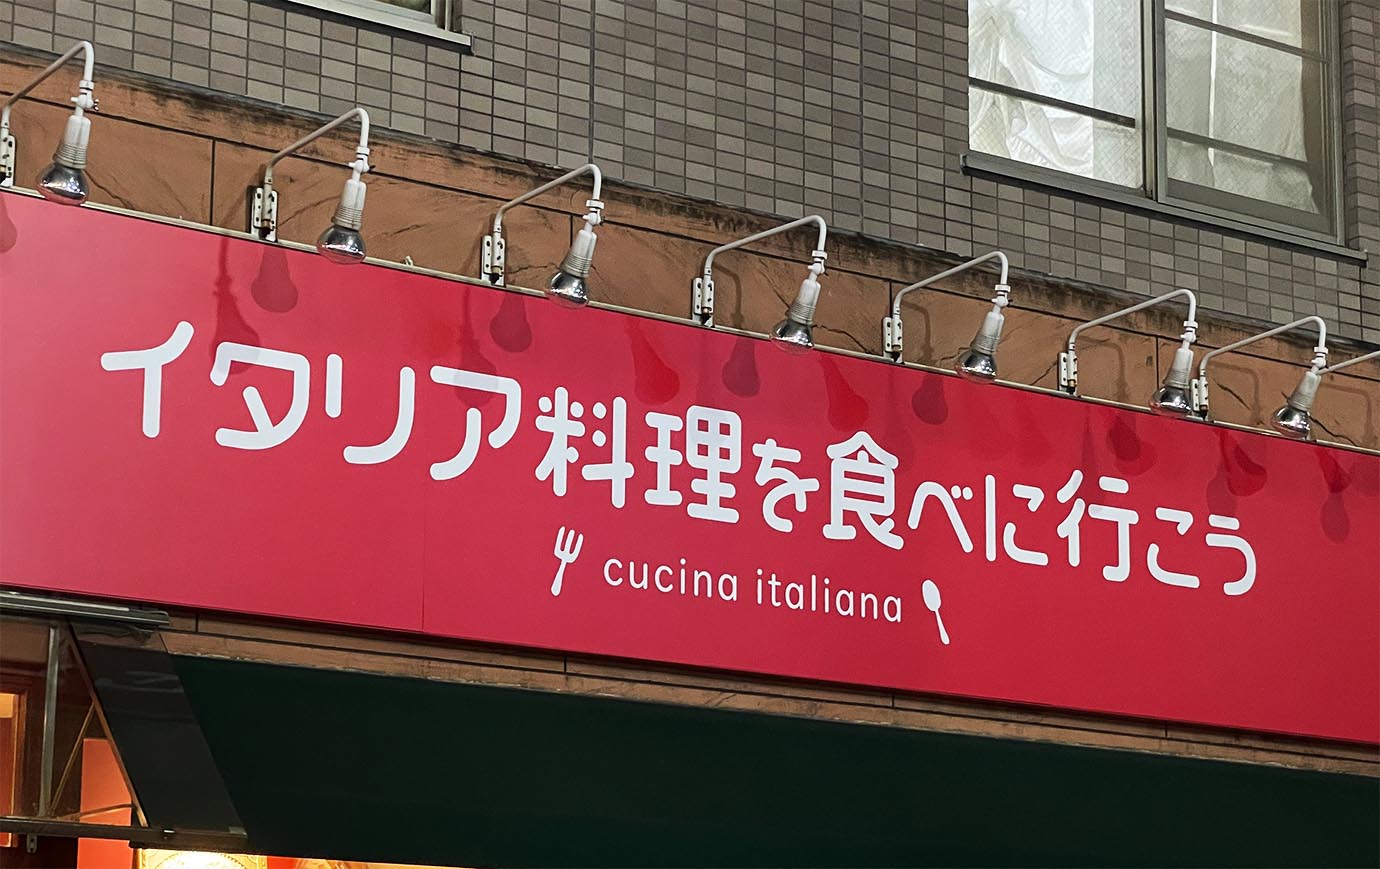 【ジョジョグルメ】イタリア料理を食べに行こうにイタリア料理を食べに行こう / ウンまああ～いっ！